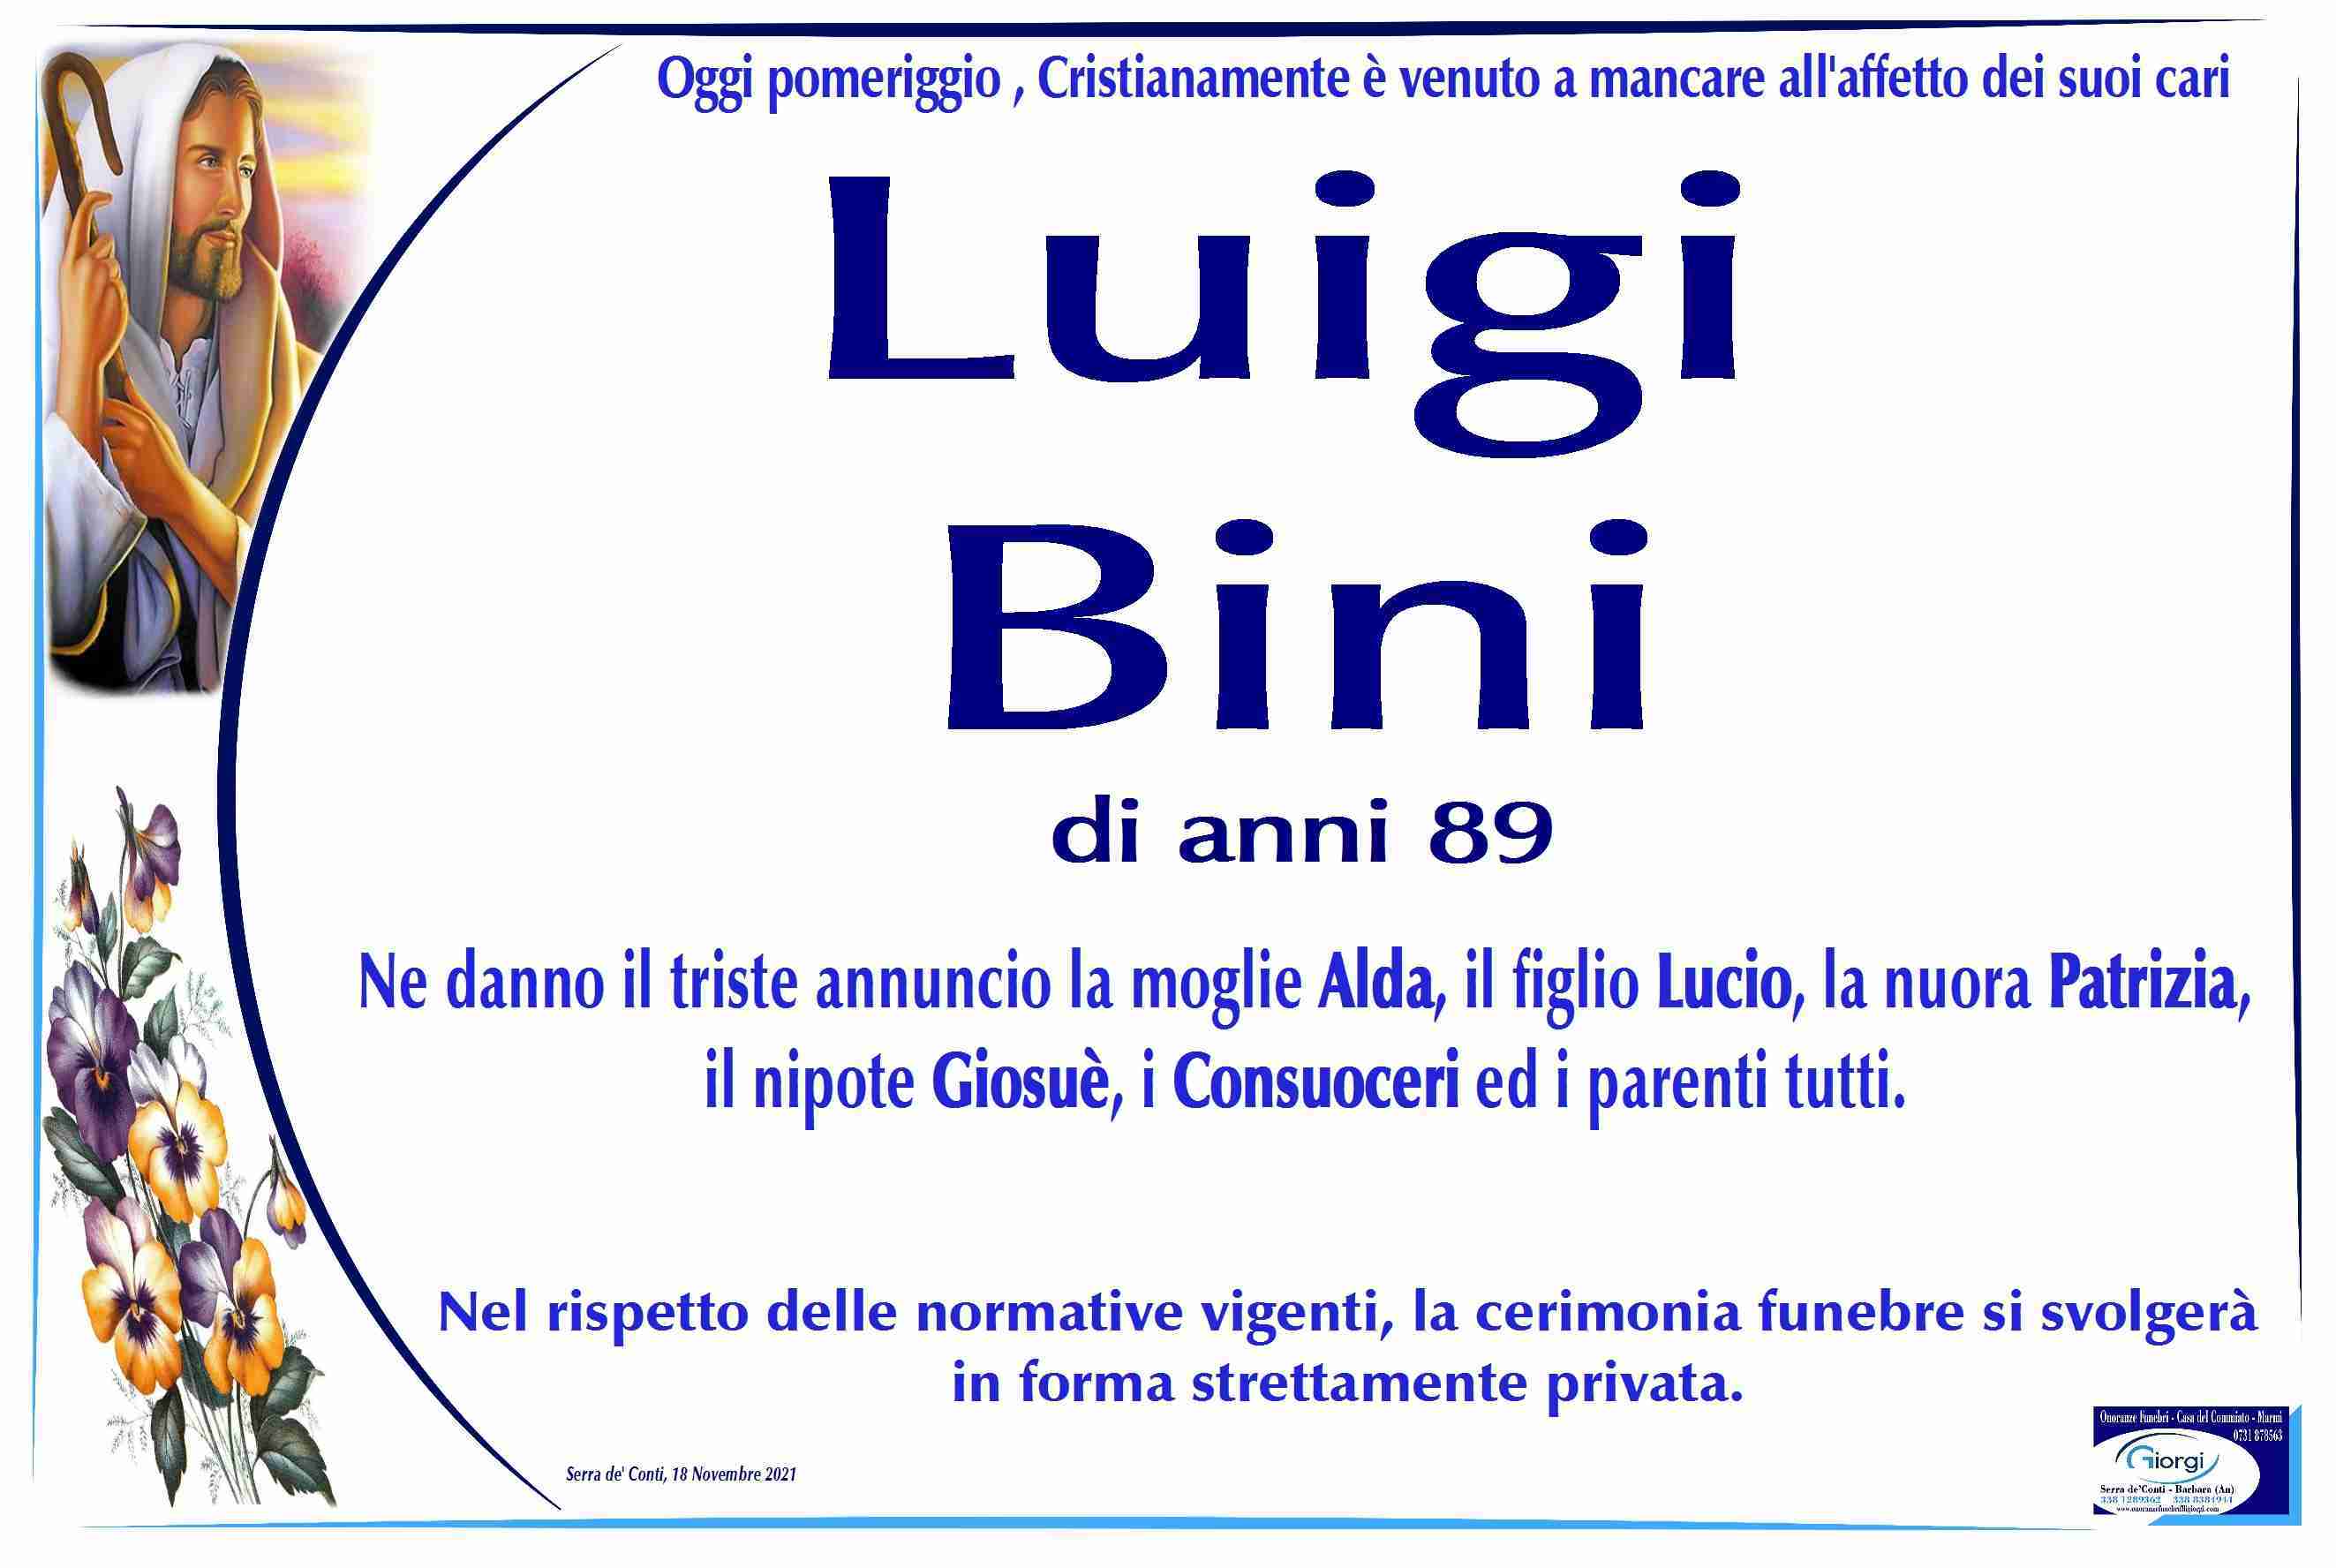 Luigi Bini